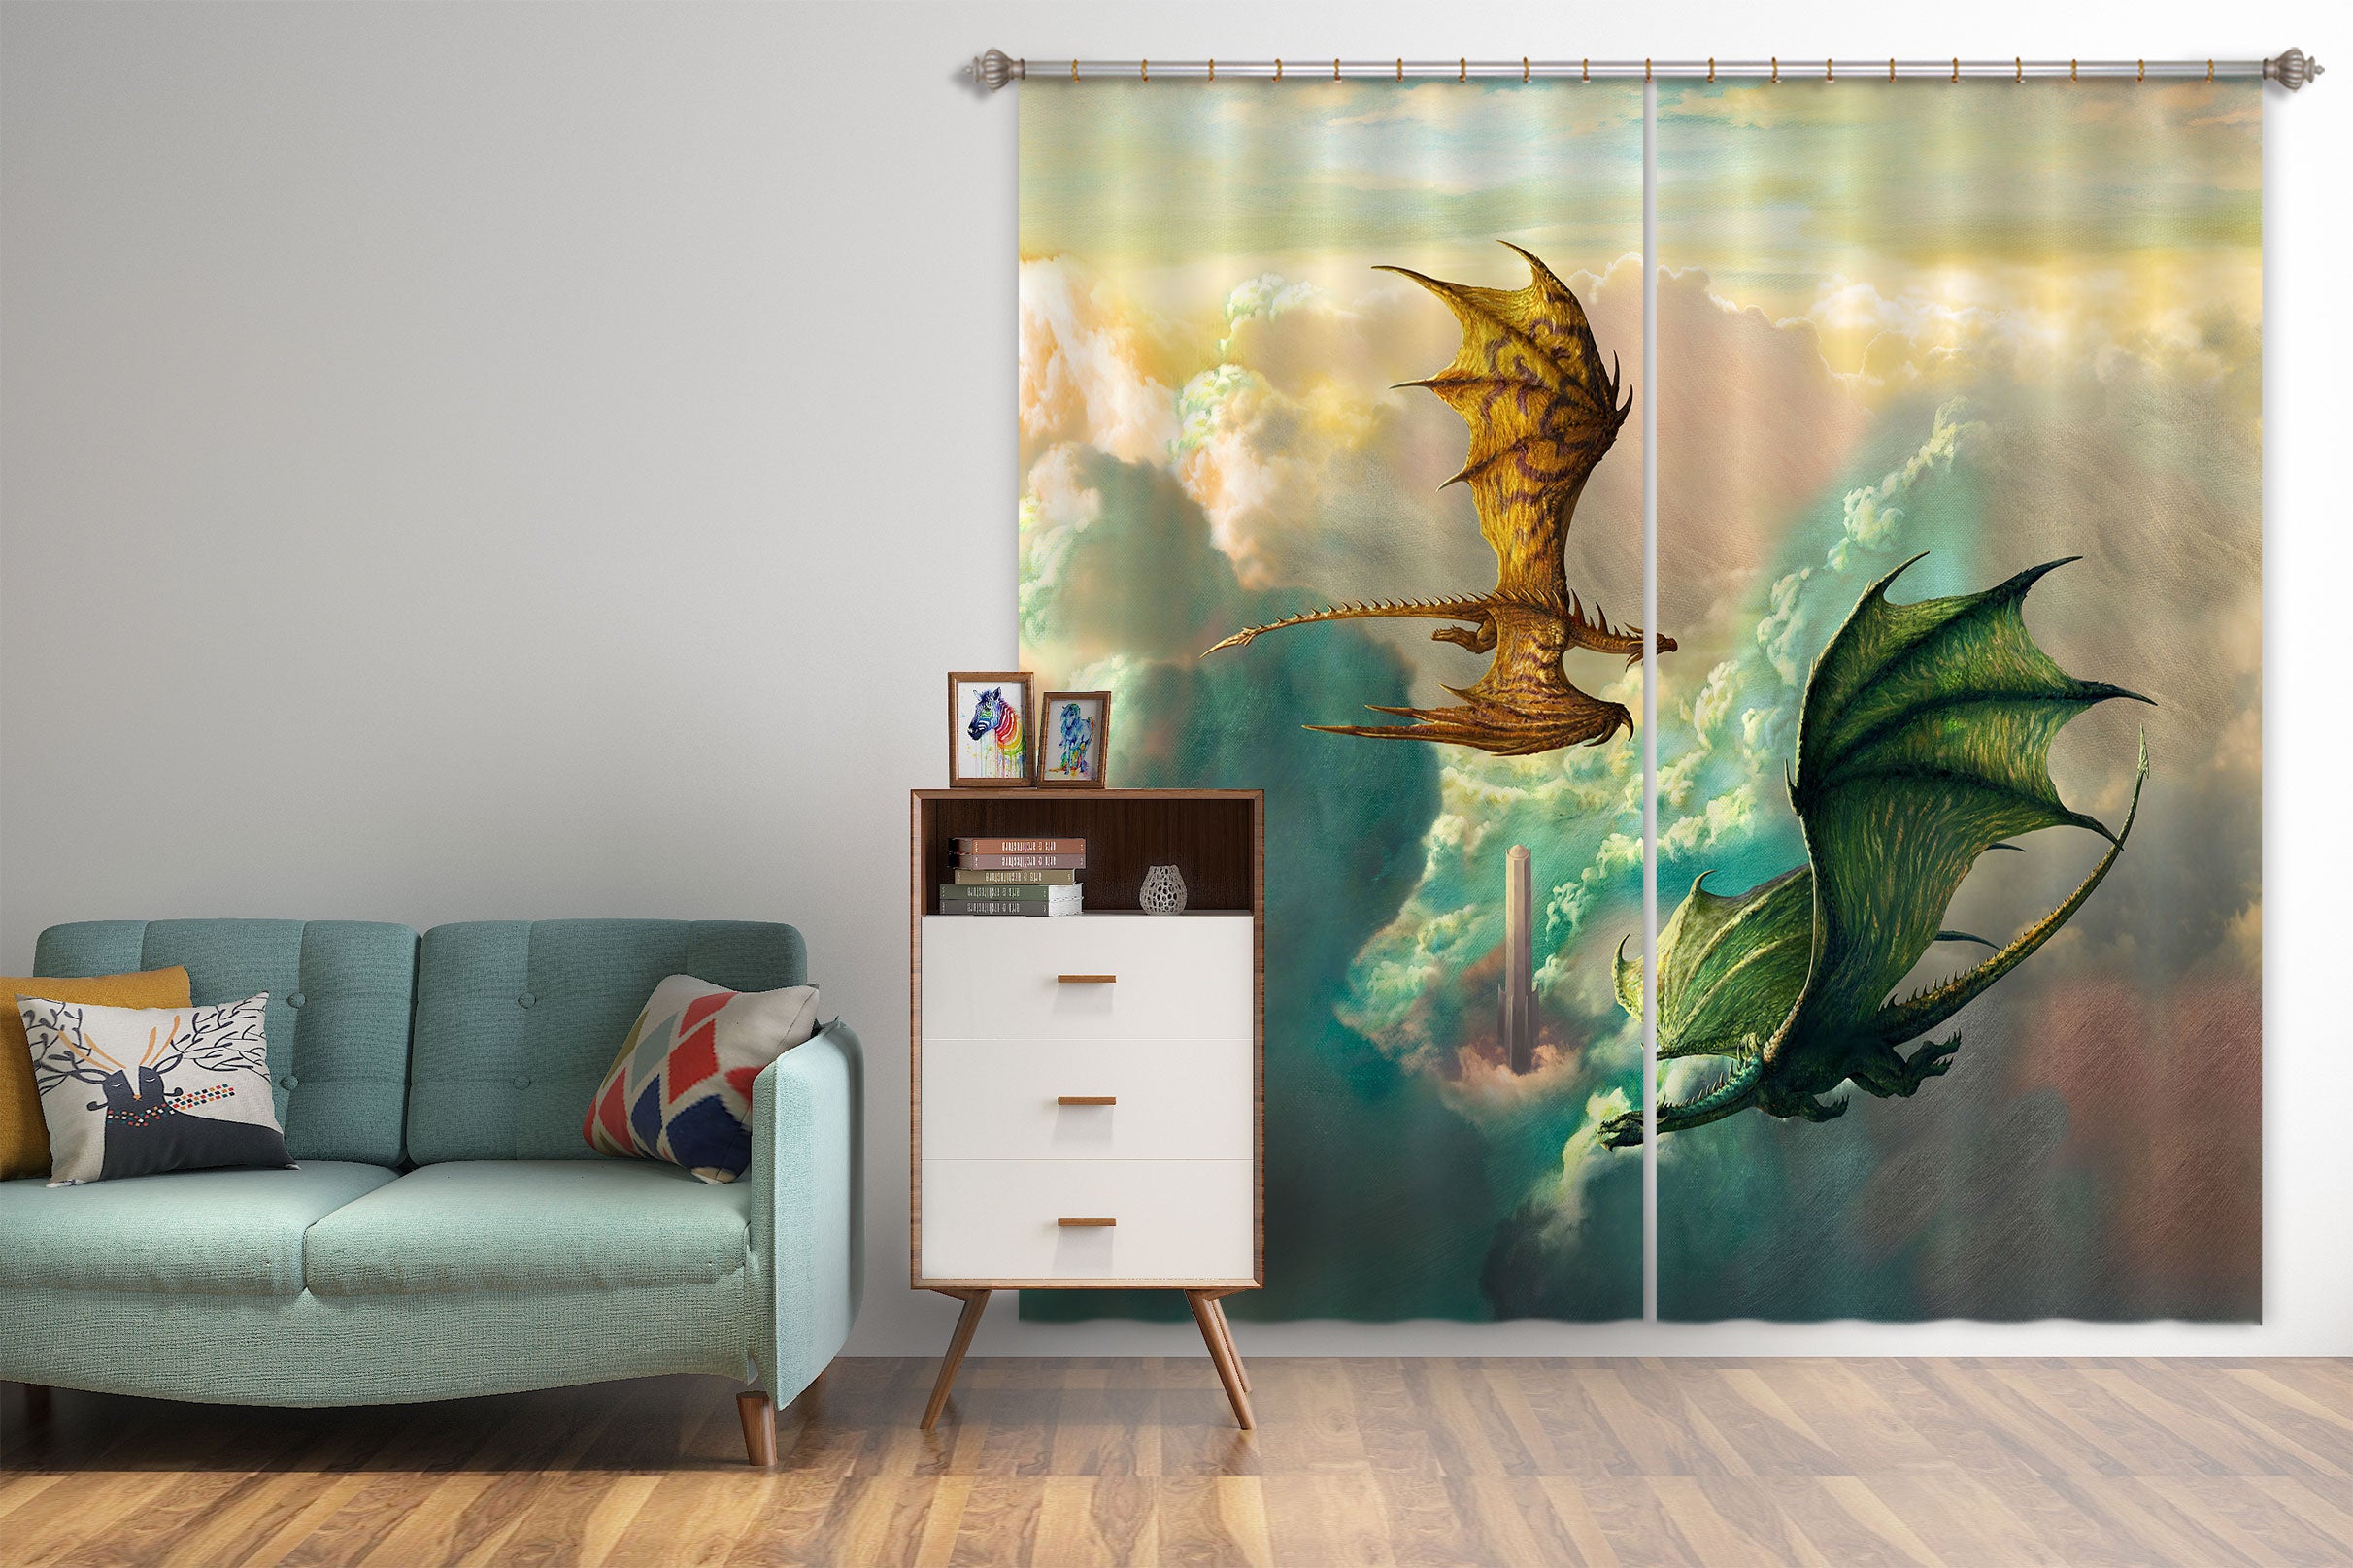 3D Tower Cloud Dragon 8032 Ciruelo Curtain Curtains Drapes